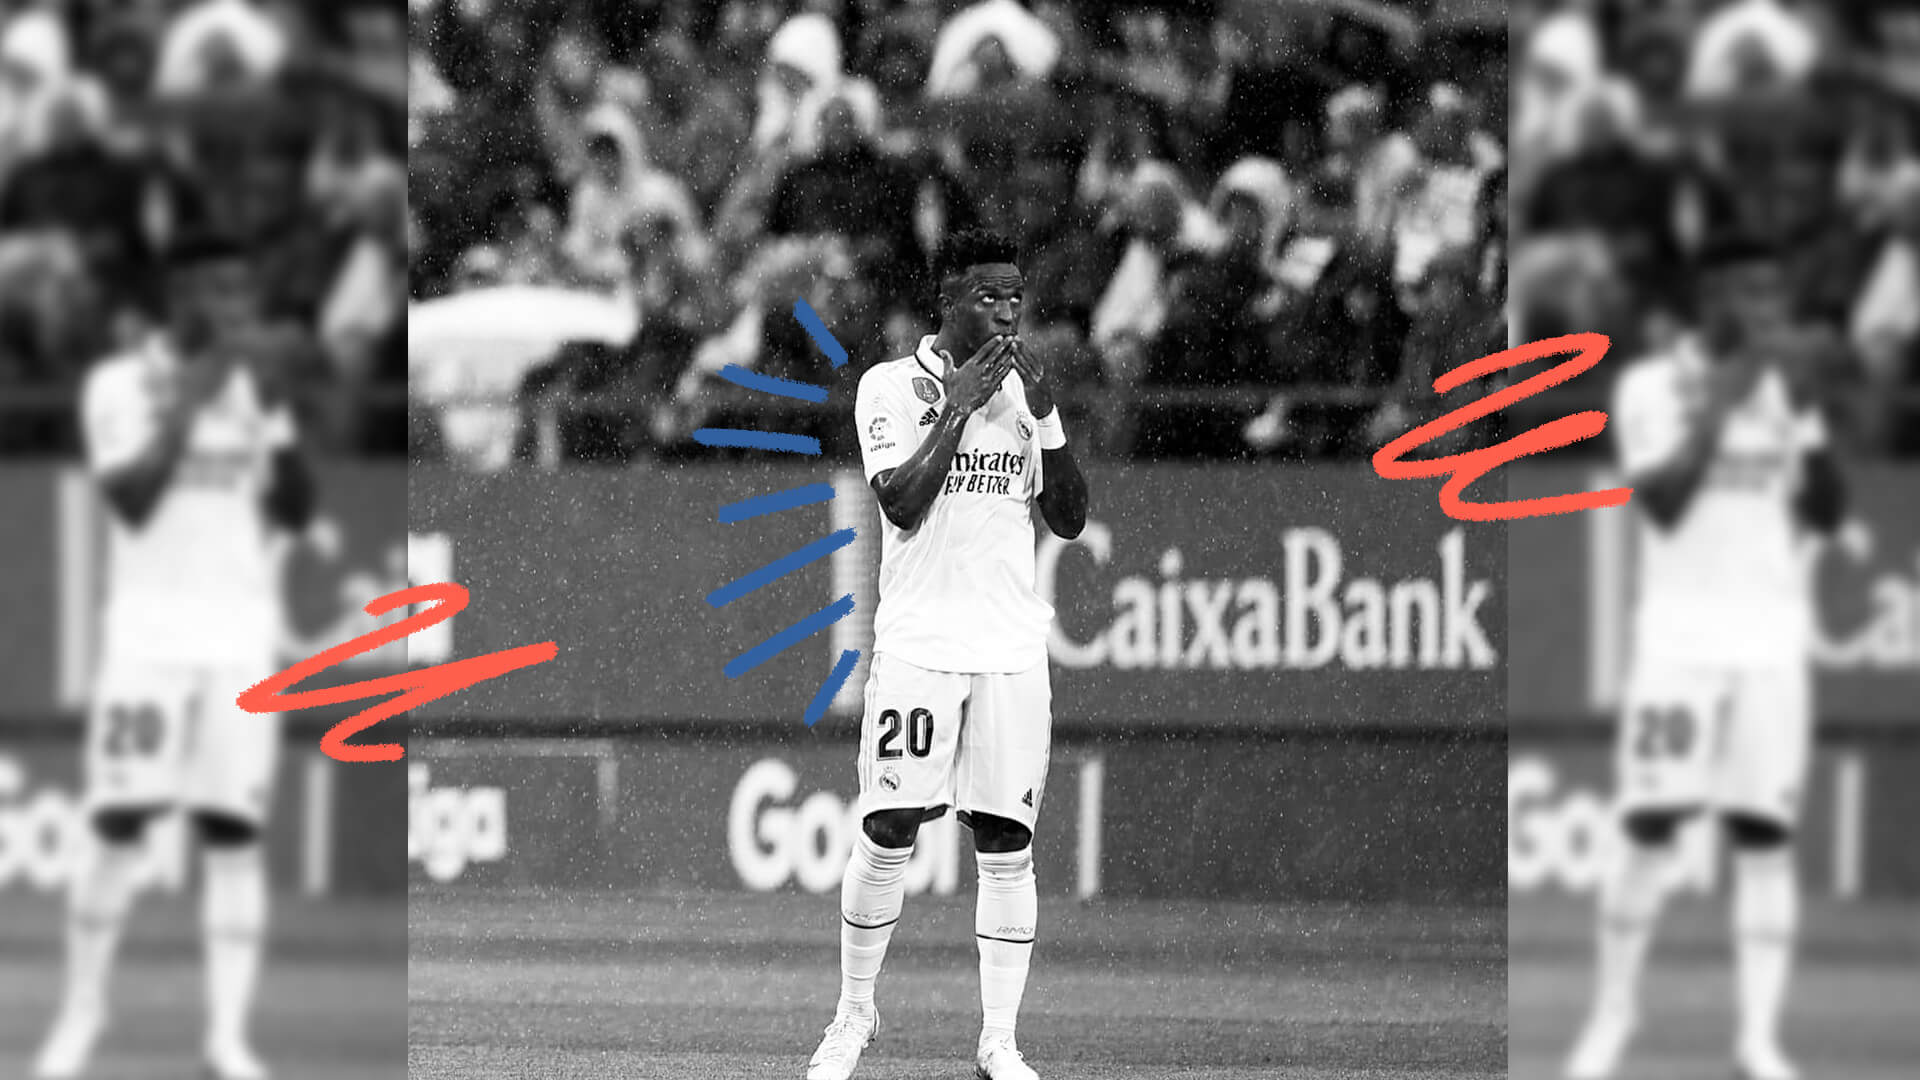 Imagem em preto e branco do jogador Vini Jr de costas para a arquibancada, em um estádio de futebol.